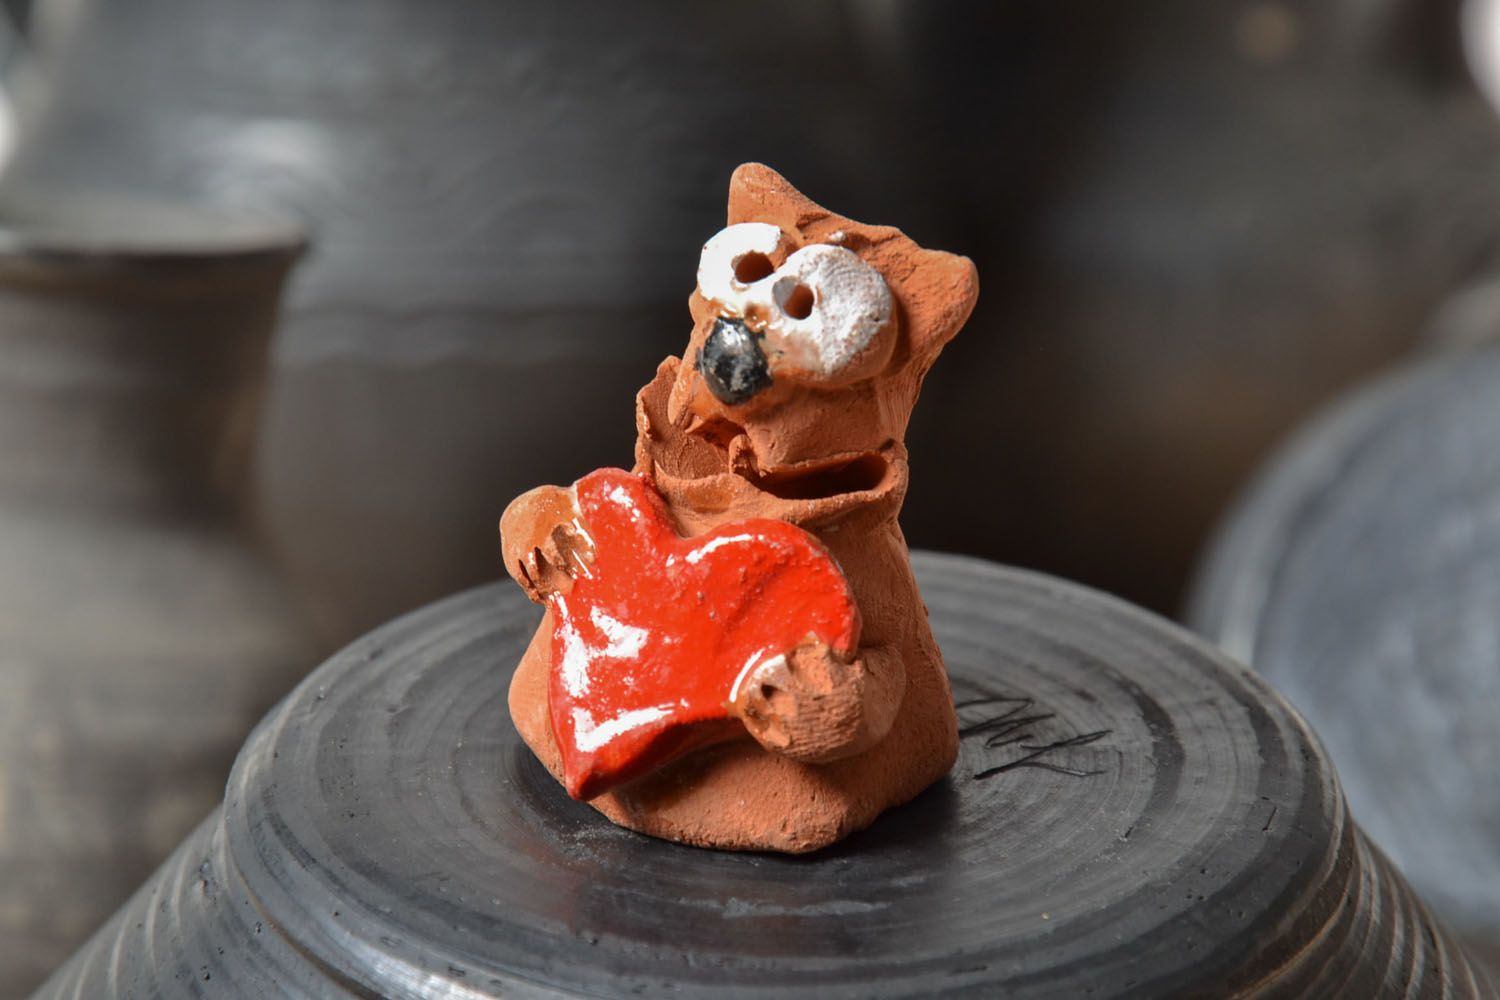 Gatto in ceramica fatto a mano figurina divertente souvenir animaletto originale foto 1